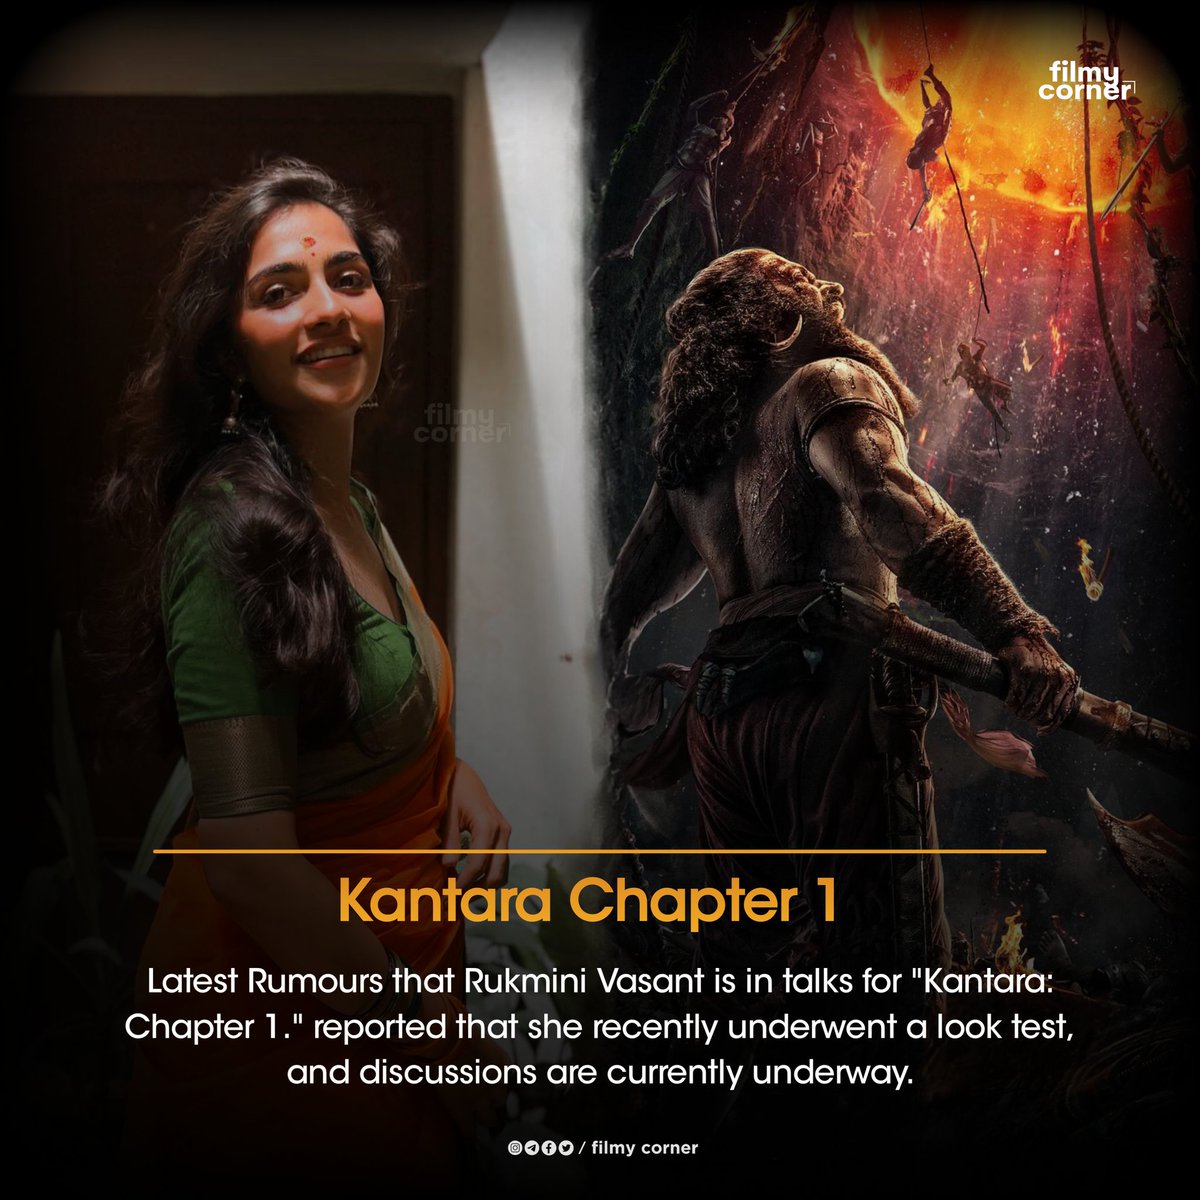 #RukminiVasant is in talks for '#Kantara: Chapter 1. ' 

#RishabShetty #Kannada #KantaraChapter1